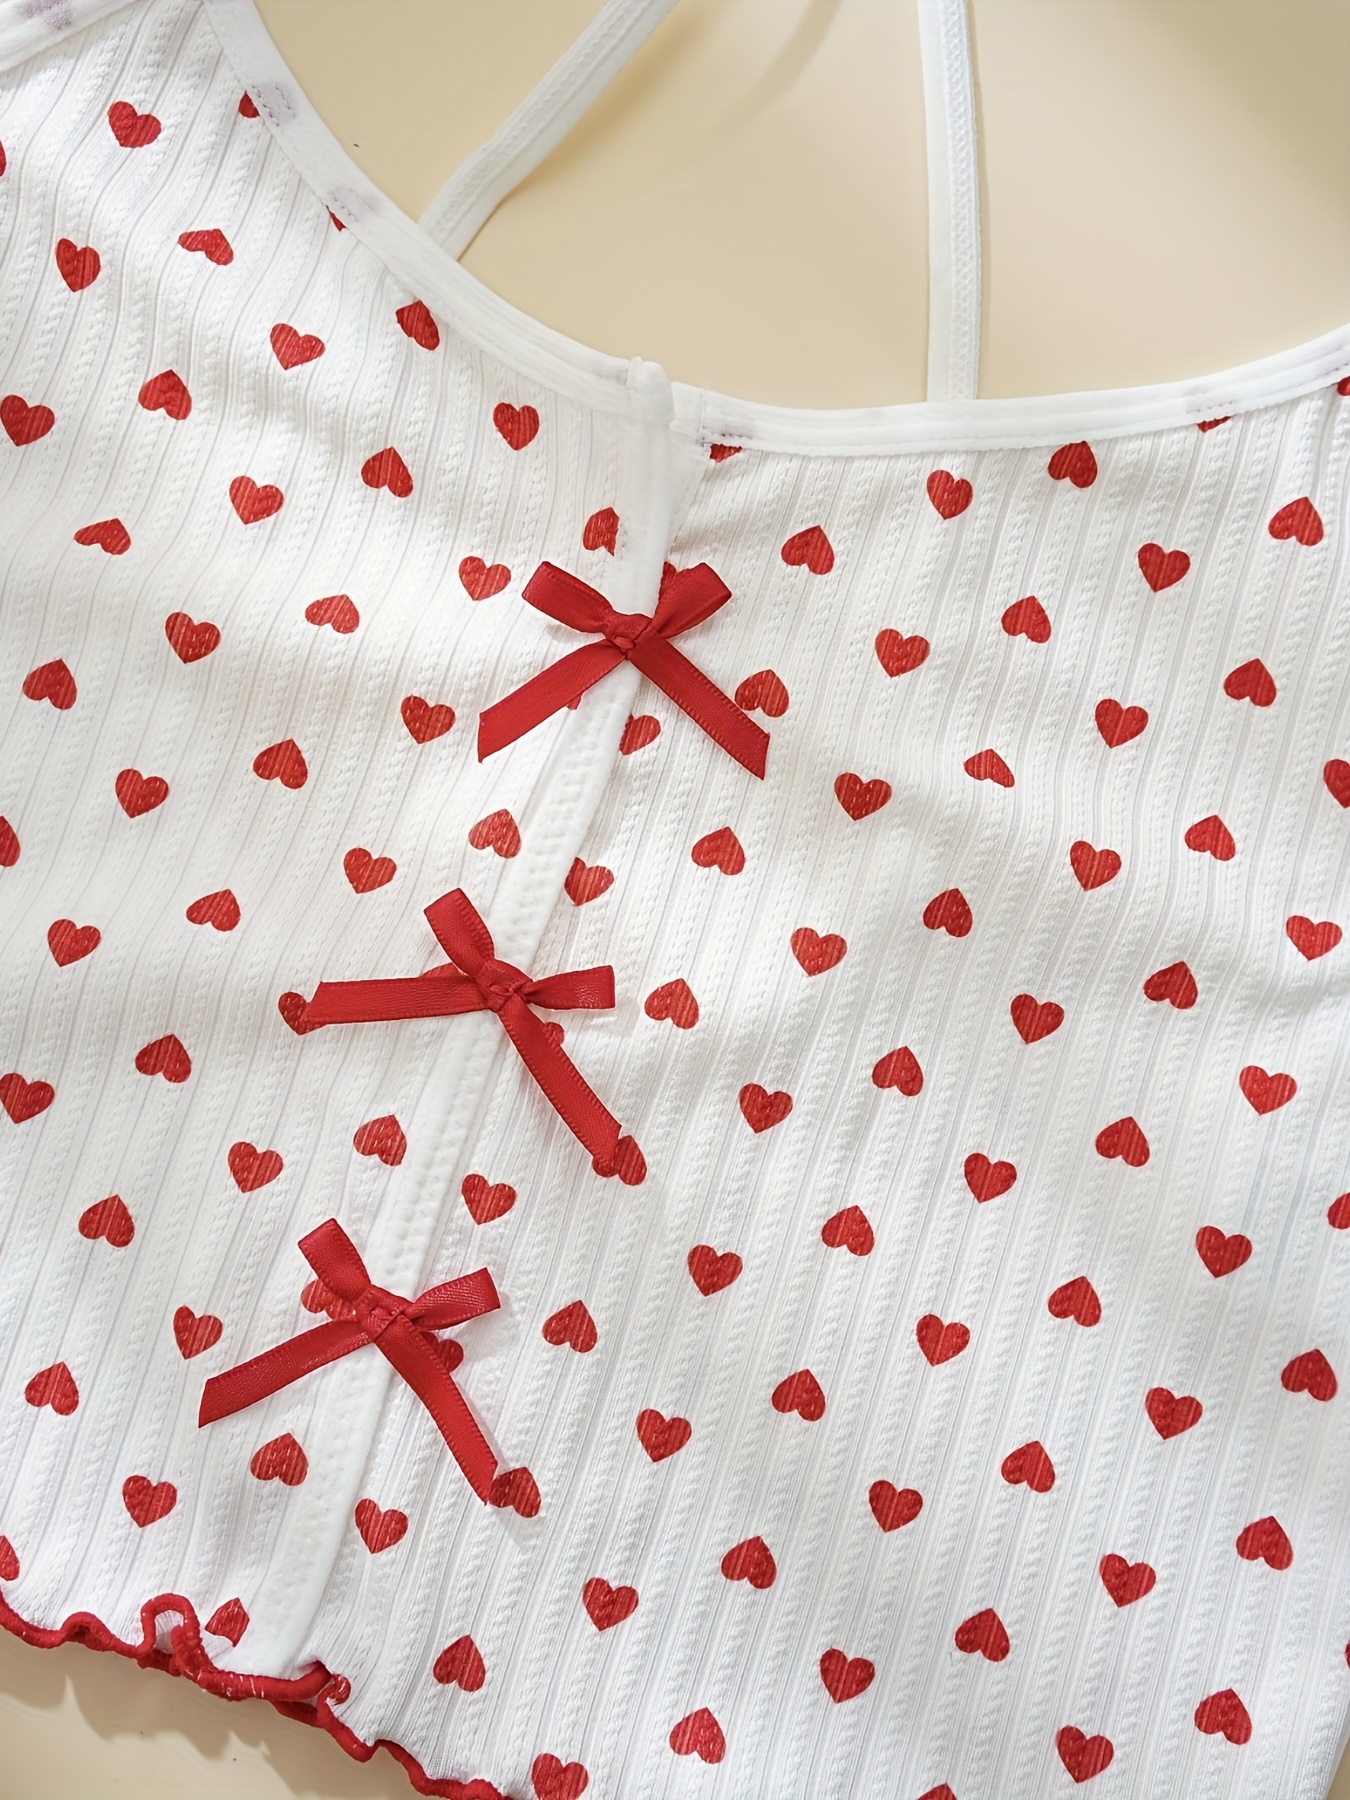 Heart Eyelash Print Pajama Set Scoop Neck Cami Top Lettuce - Temu Canada